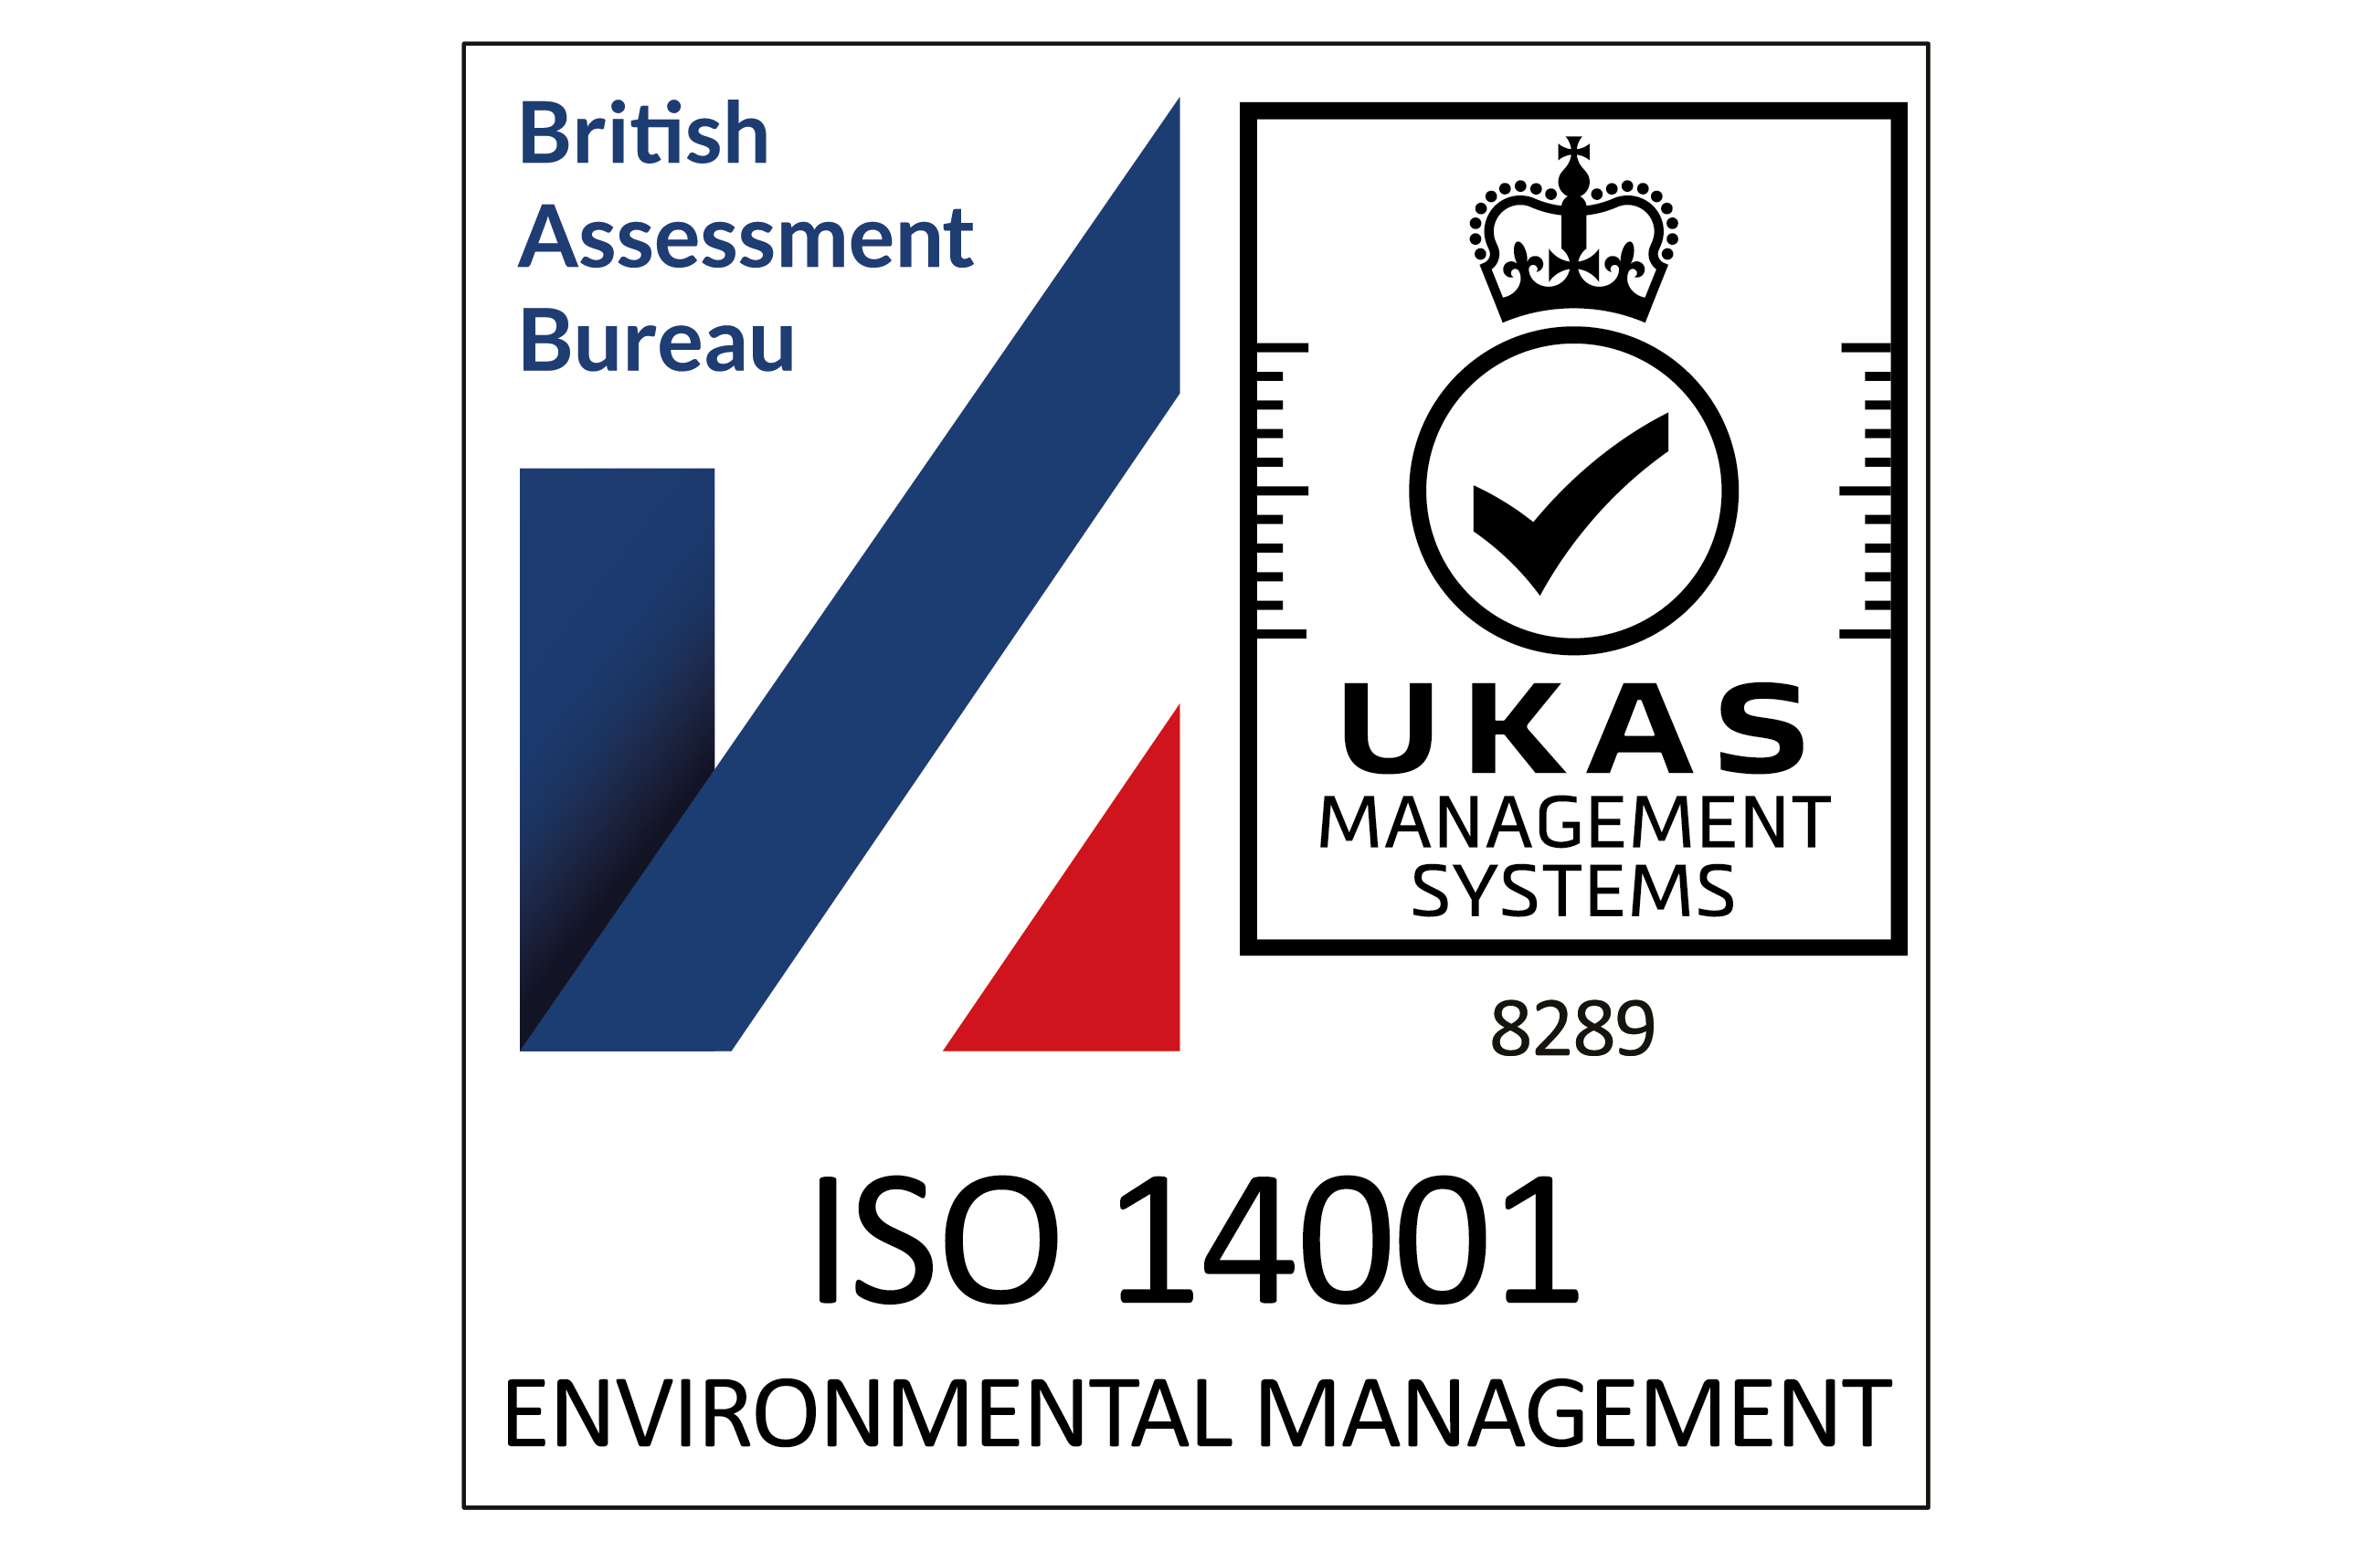 ISOQAR ISO 14001